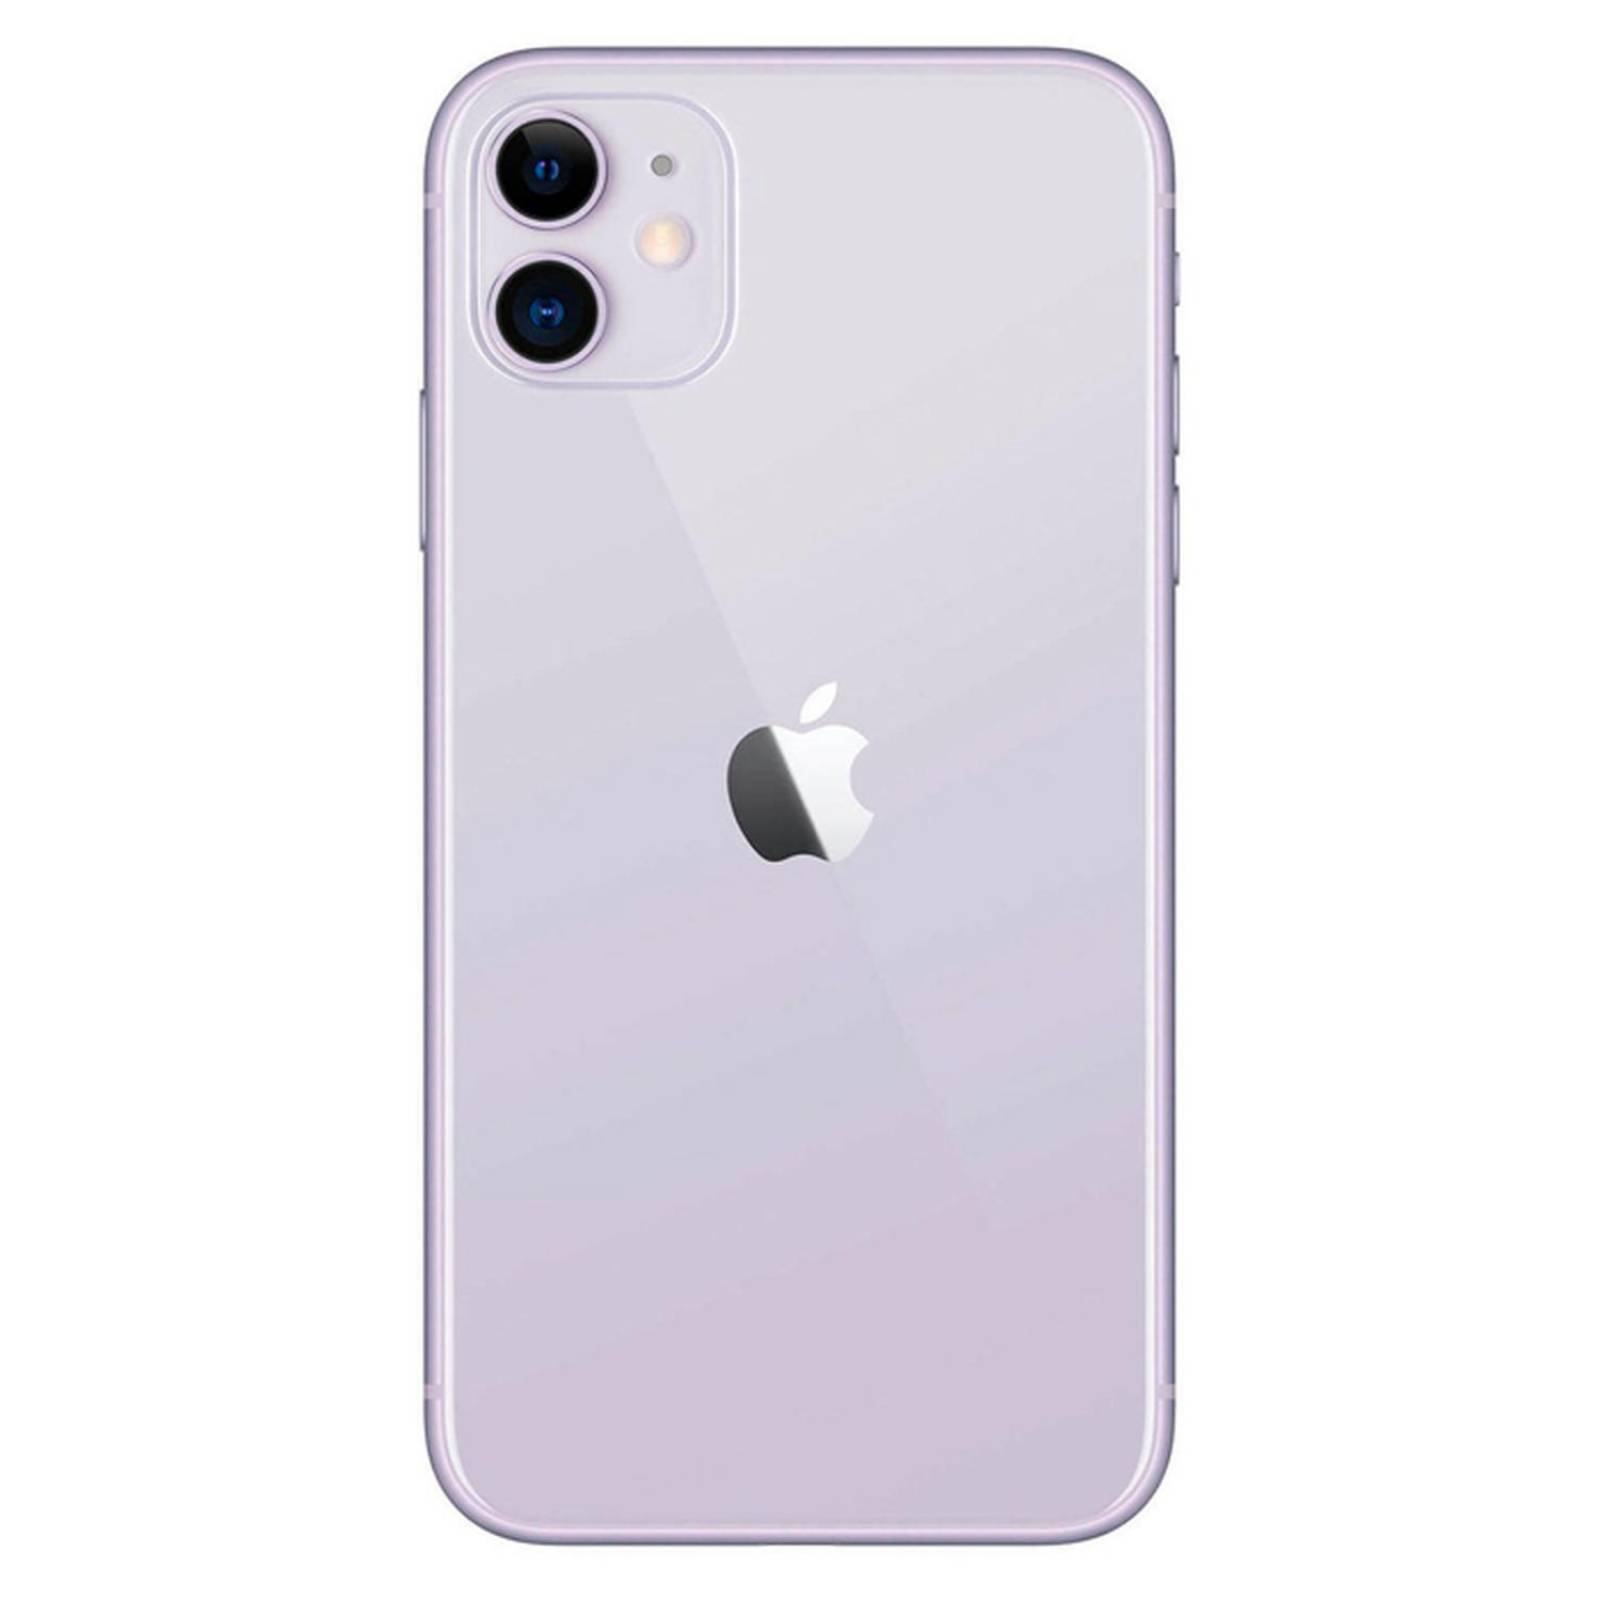 Apple iPhone XR Coral / Reacondicionado / 3+64GB / 6.1 HD+ 